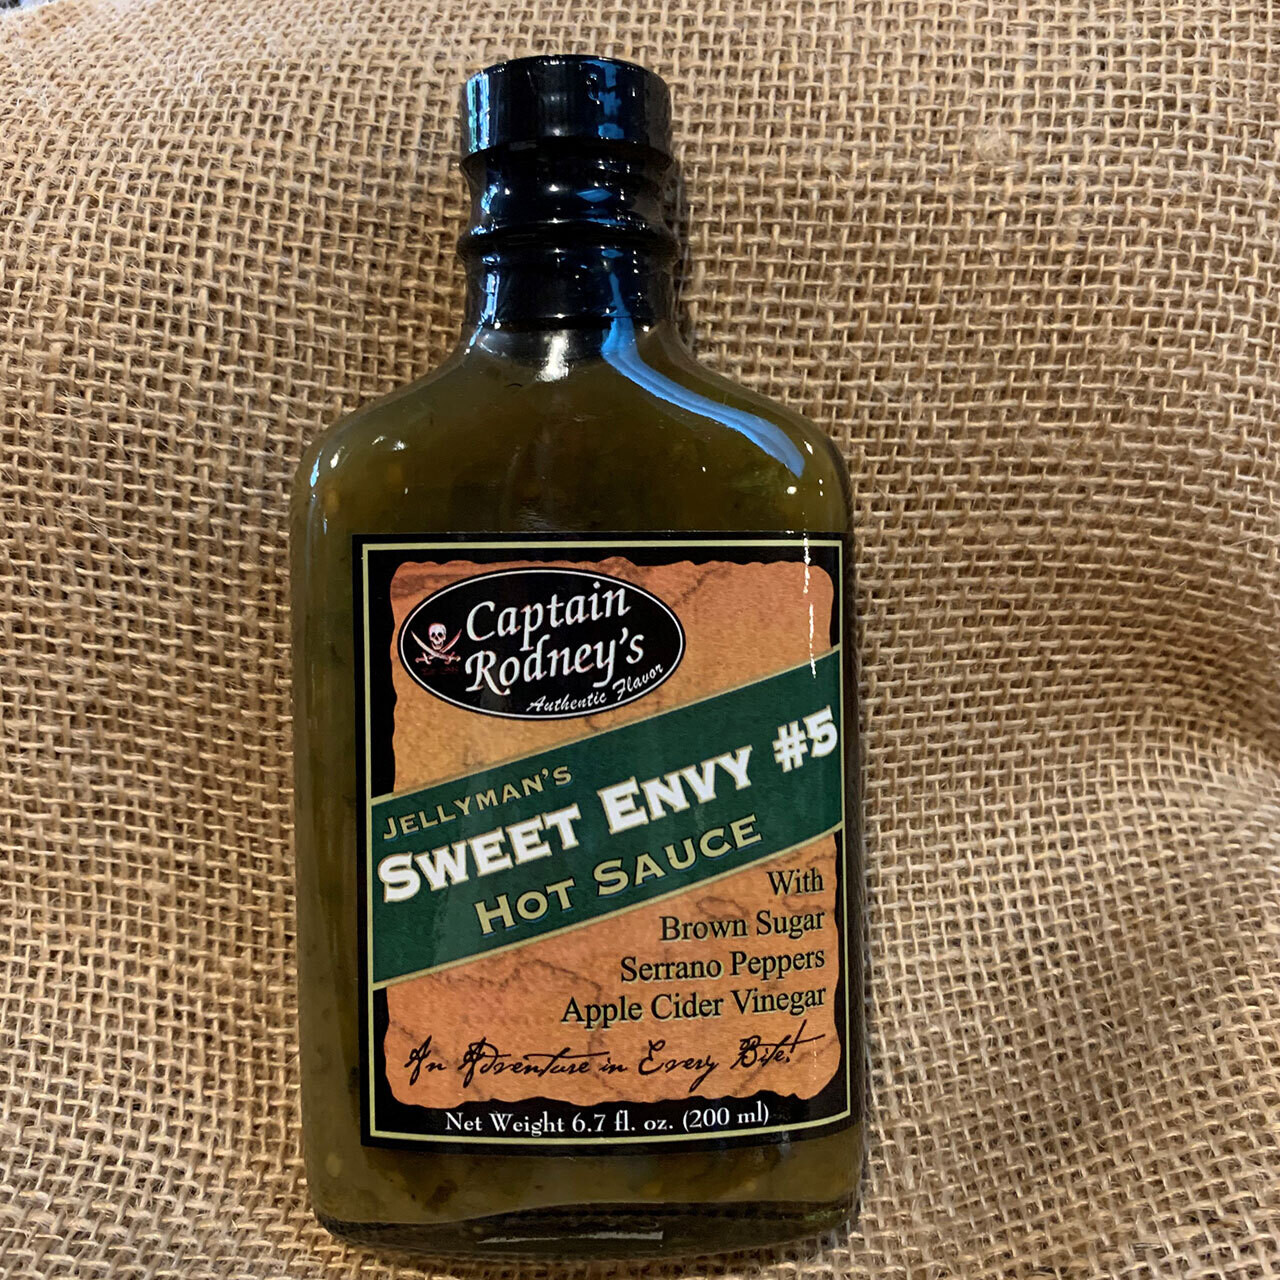 Captain Rodney's Sweet Envy #5 Flask